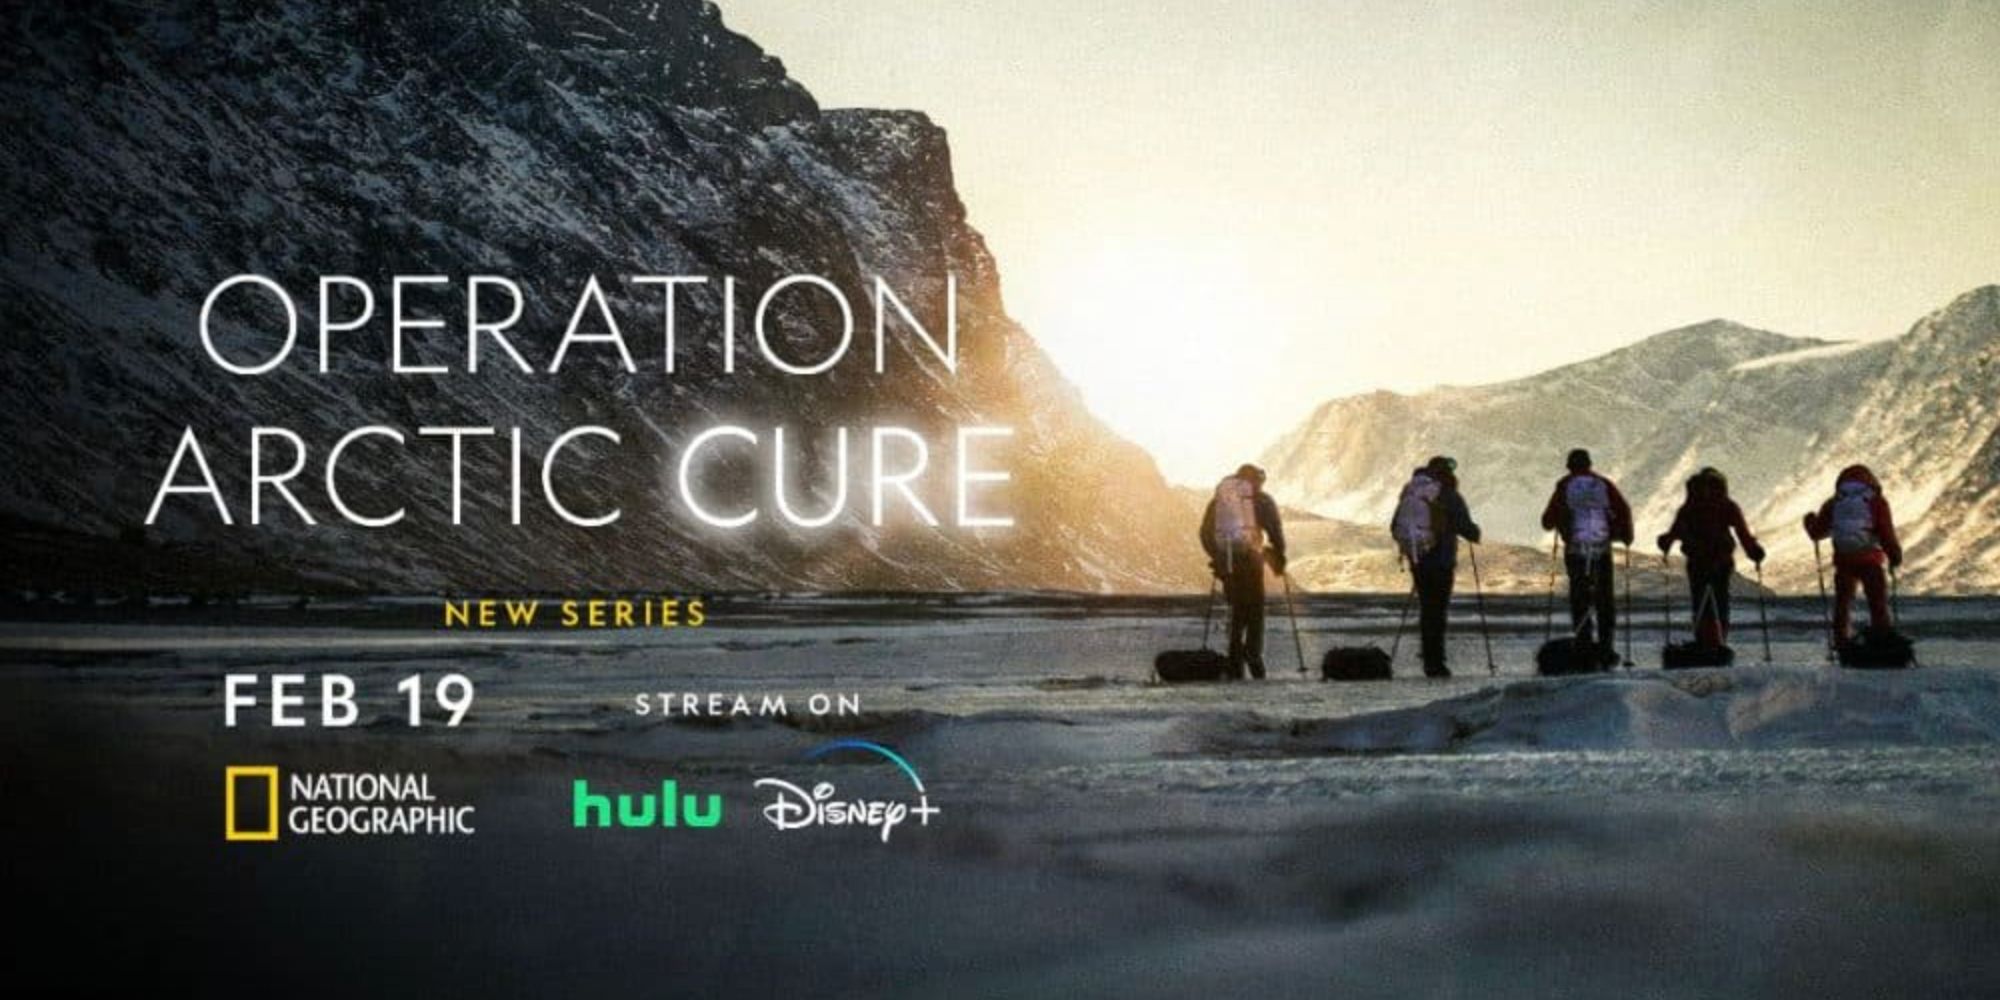 National Geographic belgeseli Arctic Cure Operasyonu'nun başlık kartında başlık, kar teçhizatı giyen adamların yanında yer alıyor